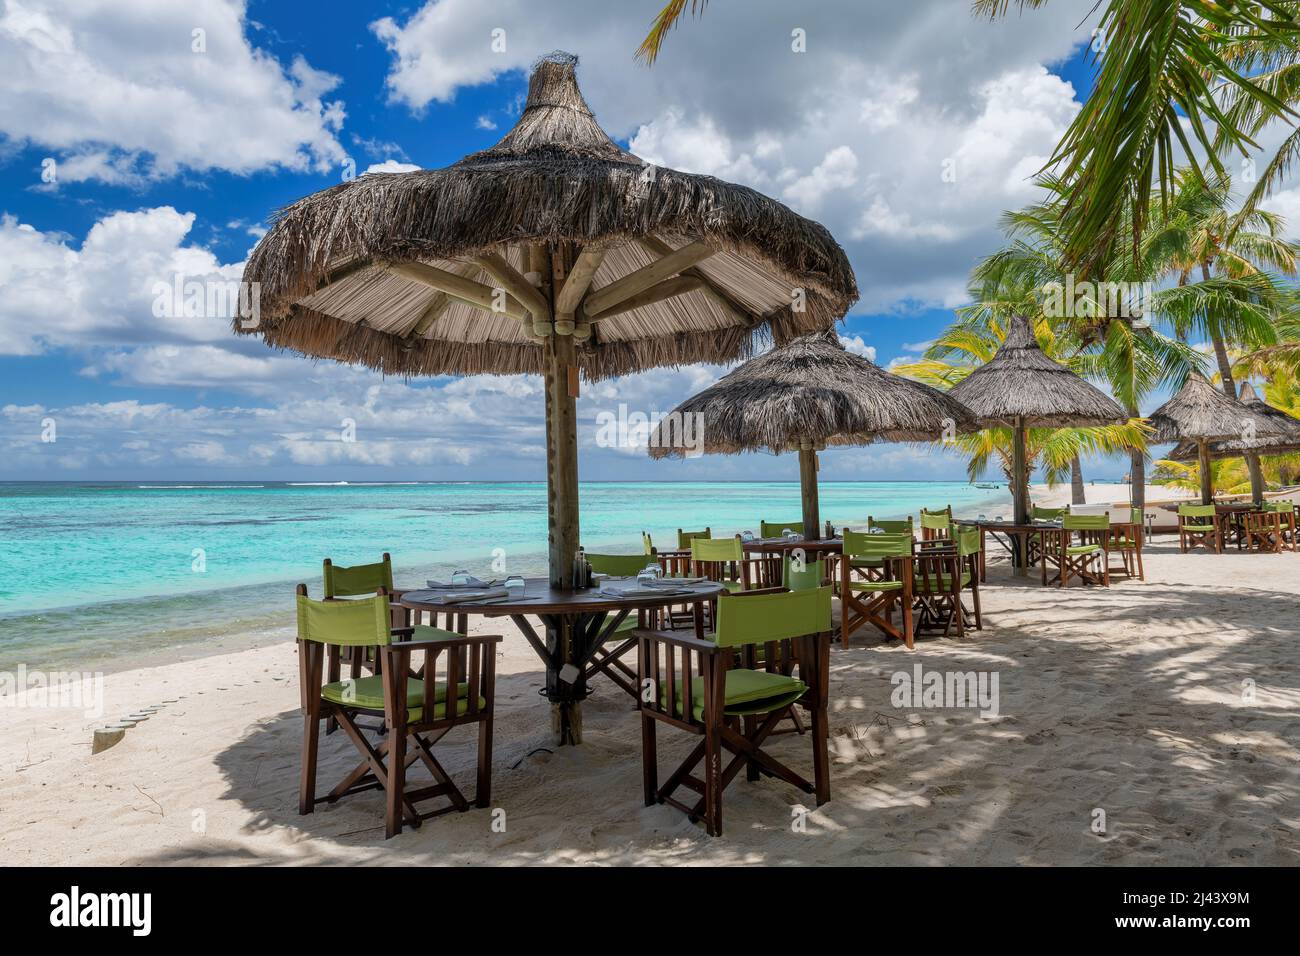 Restaurante de playa en la playa bajo sombrillas, Foto de stock